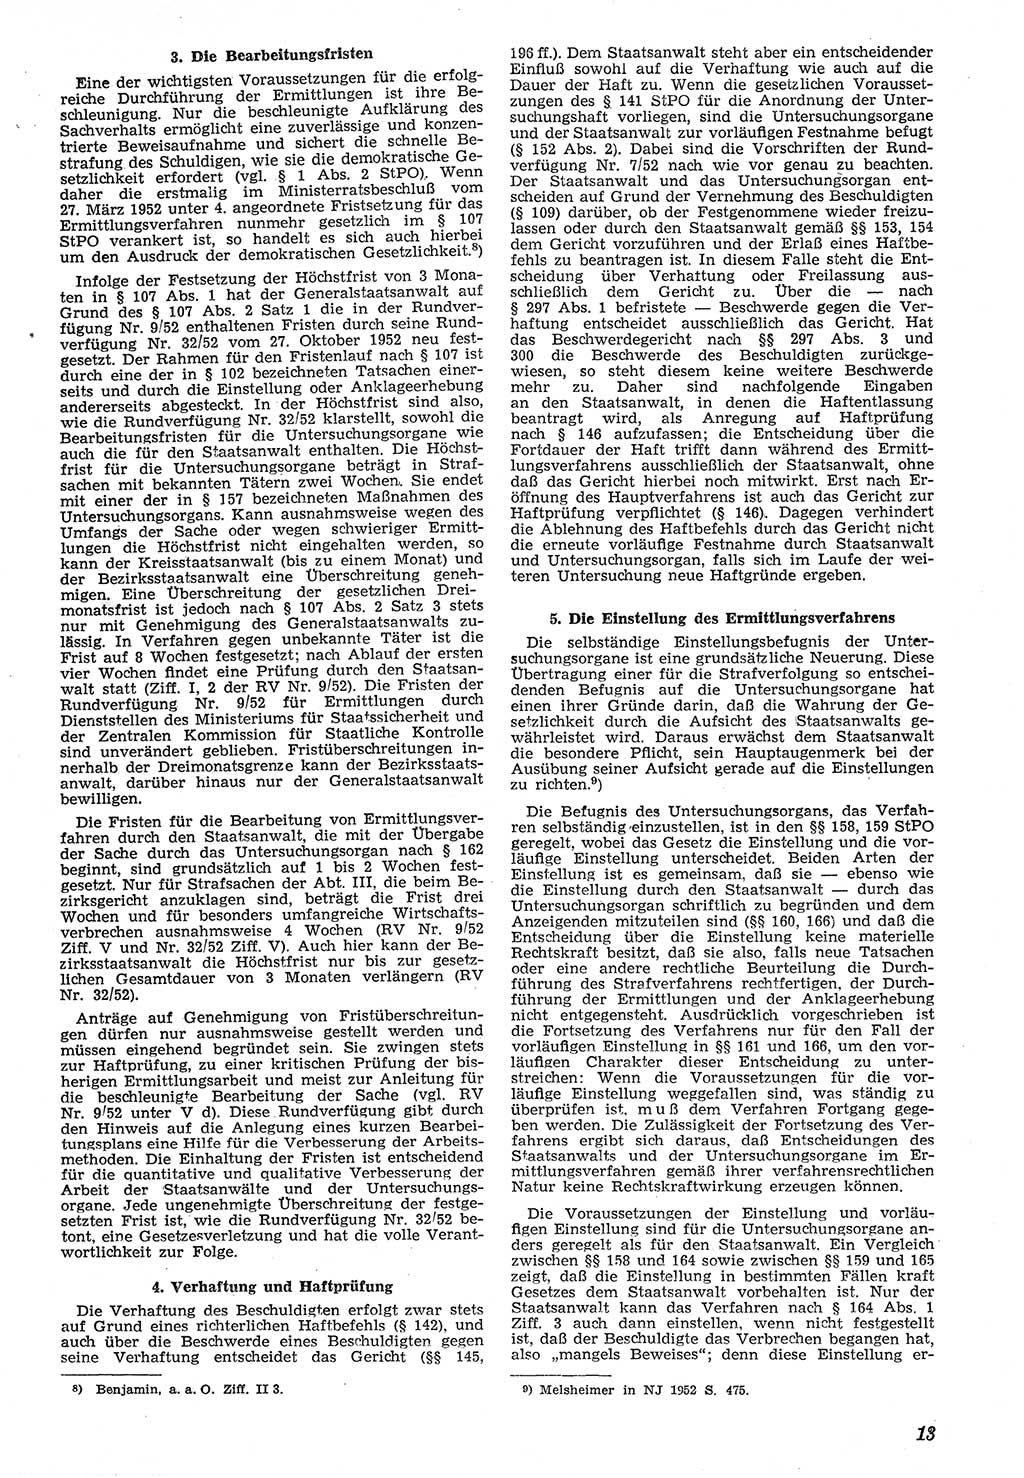 Neue Justiz (NJ), Zeitschrift für Recht und Rechtswissenschaft [Deutsche Demokratische Republik (DDR)], 7. Jahrgang 1953, Seite 13 (NJ DDR 1953, S. 13)